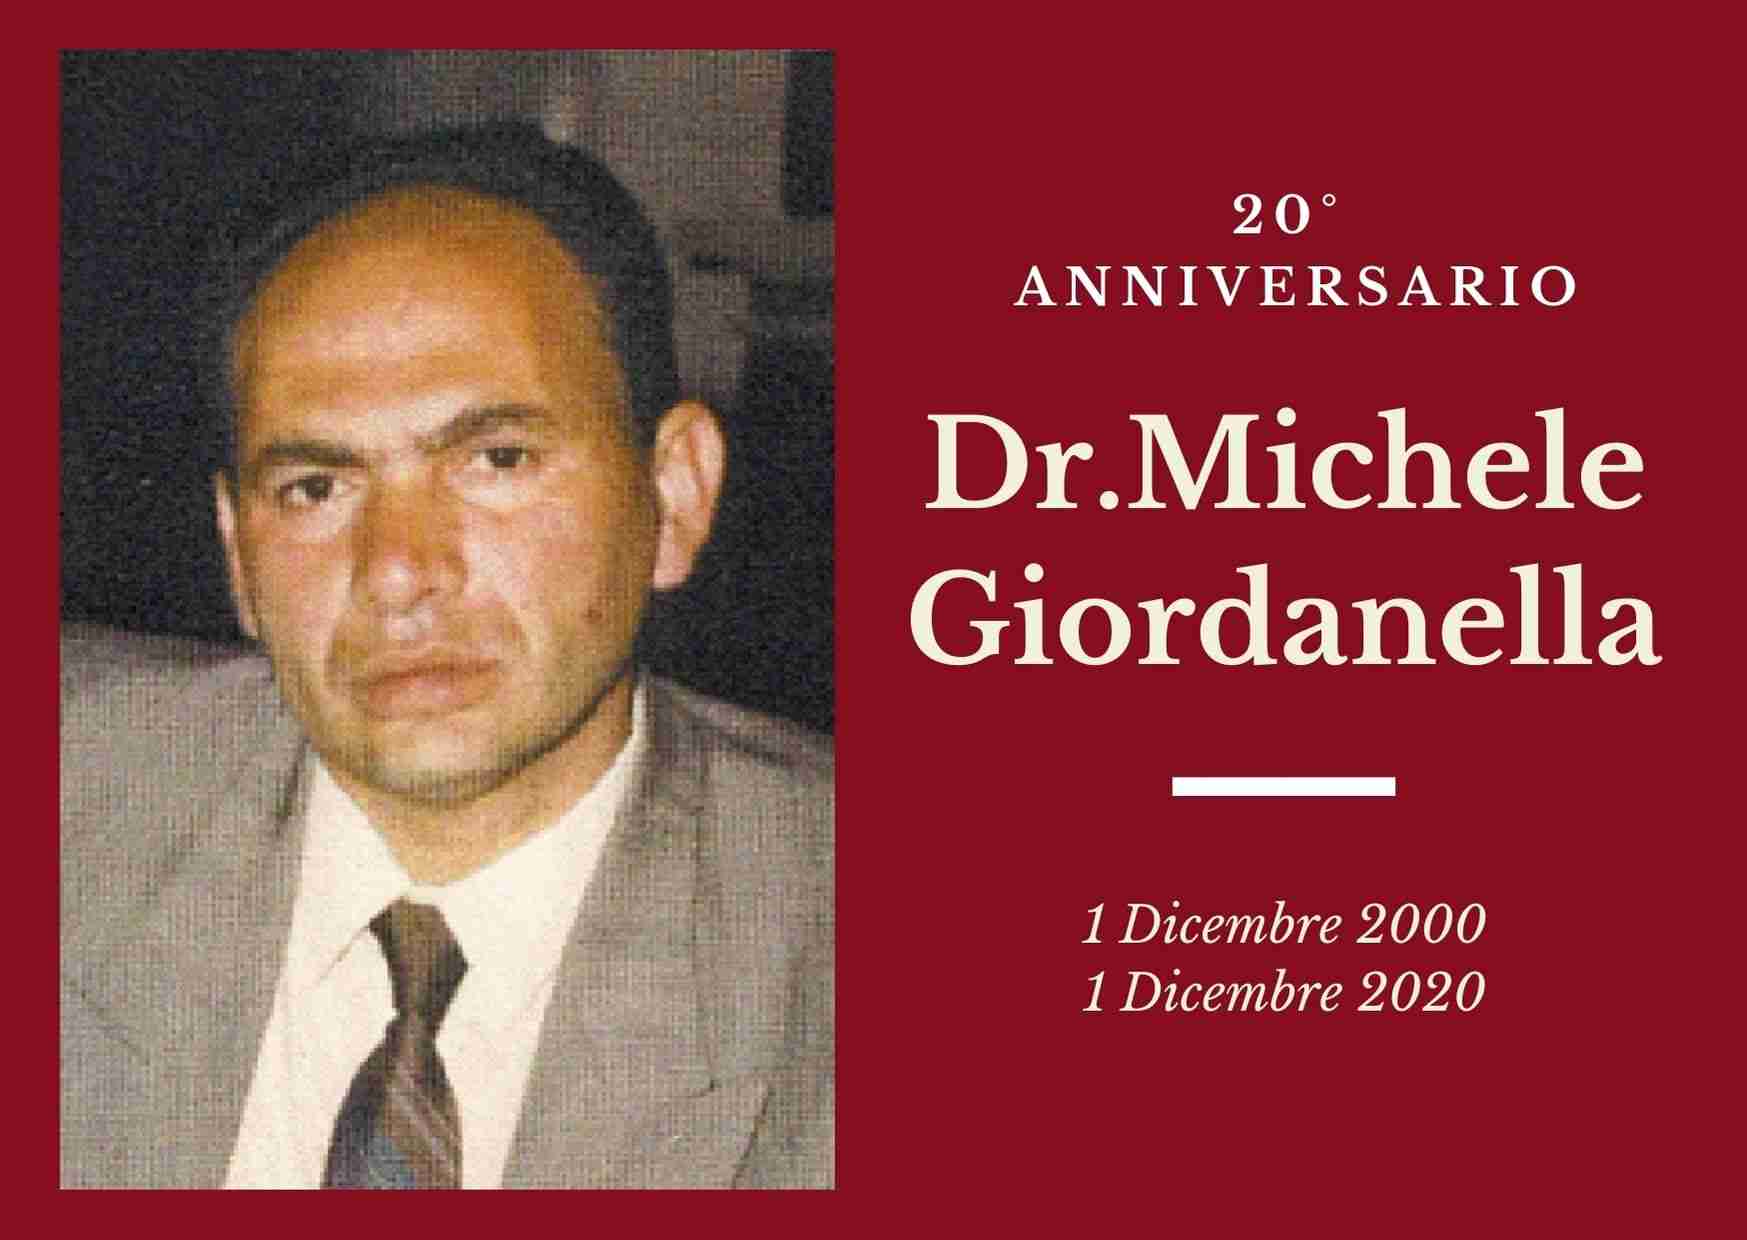 Necrologio: l’1 dicembre è ricorso il 20°anniversario del Dott. Michele Giordanella